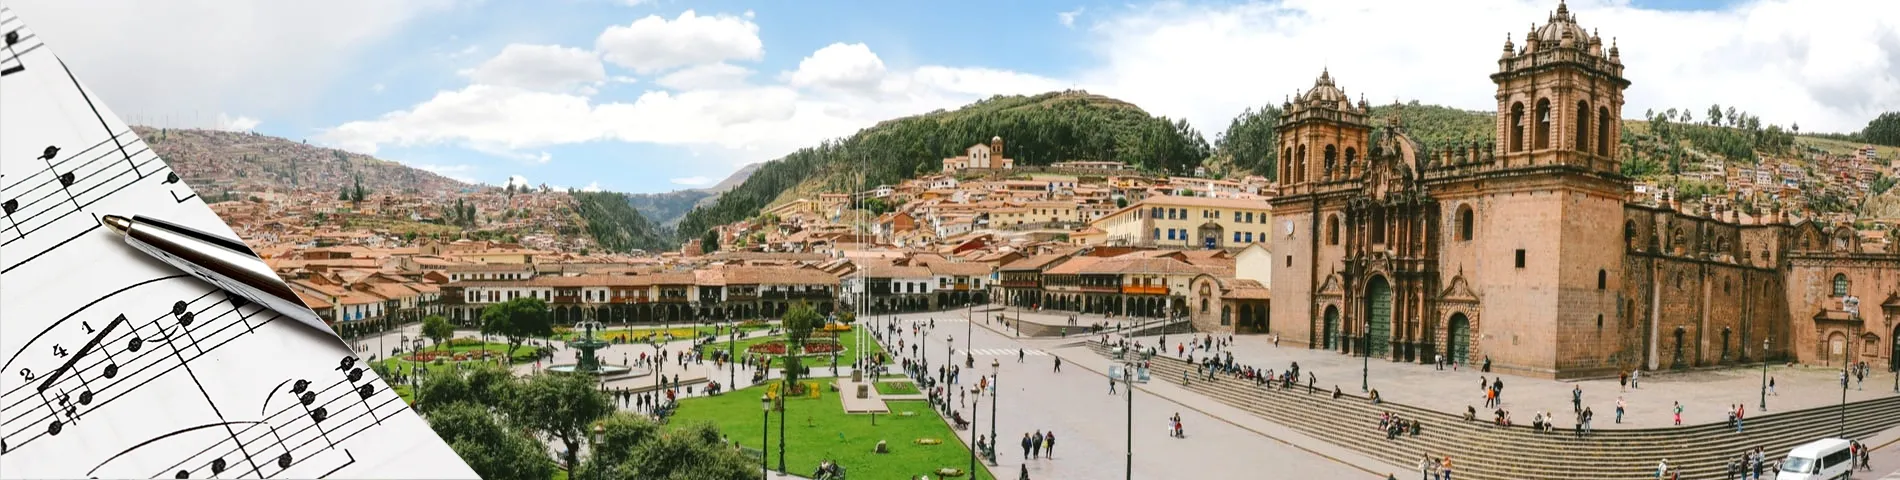 Cuzco - Španělština a Hudba